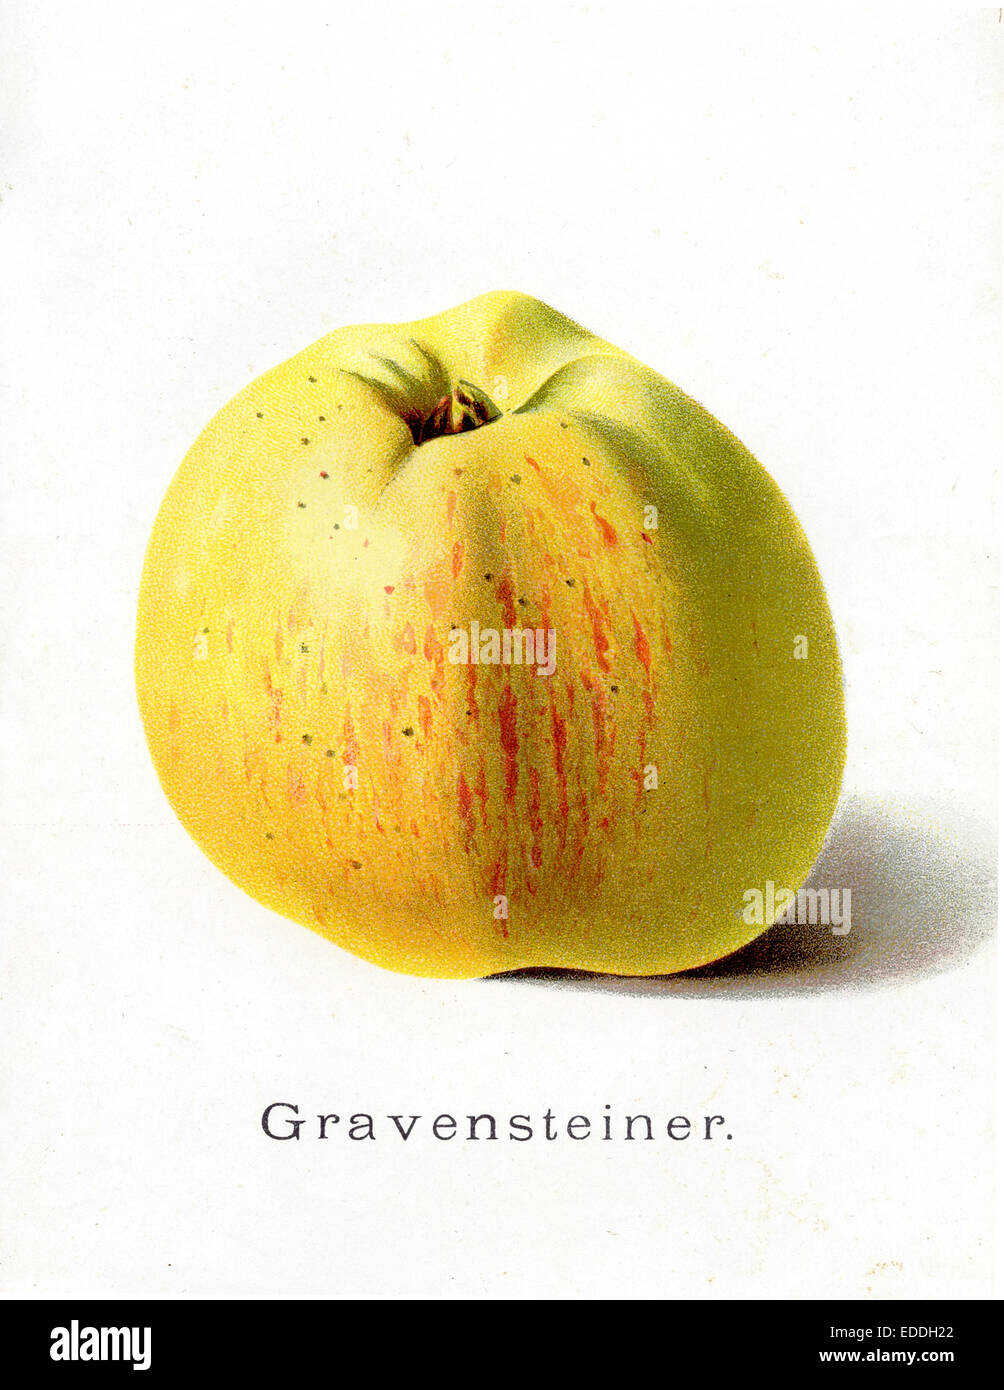 apple, apple variety: Gravenstein Stock Photo